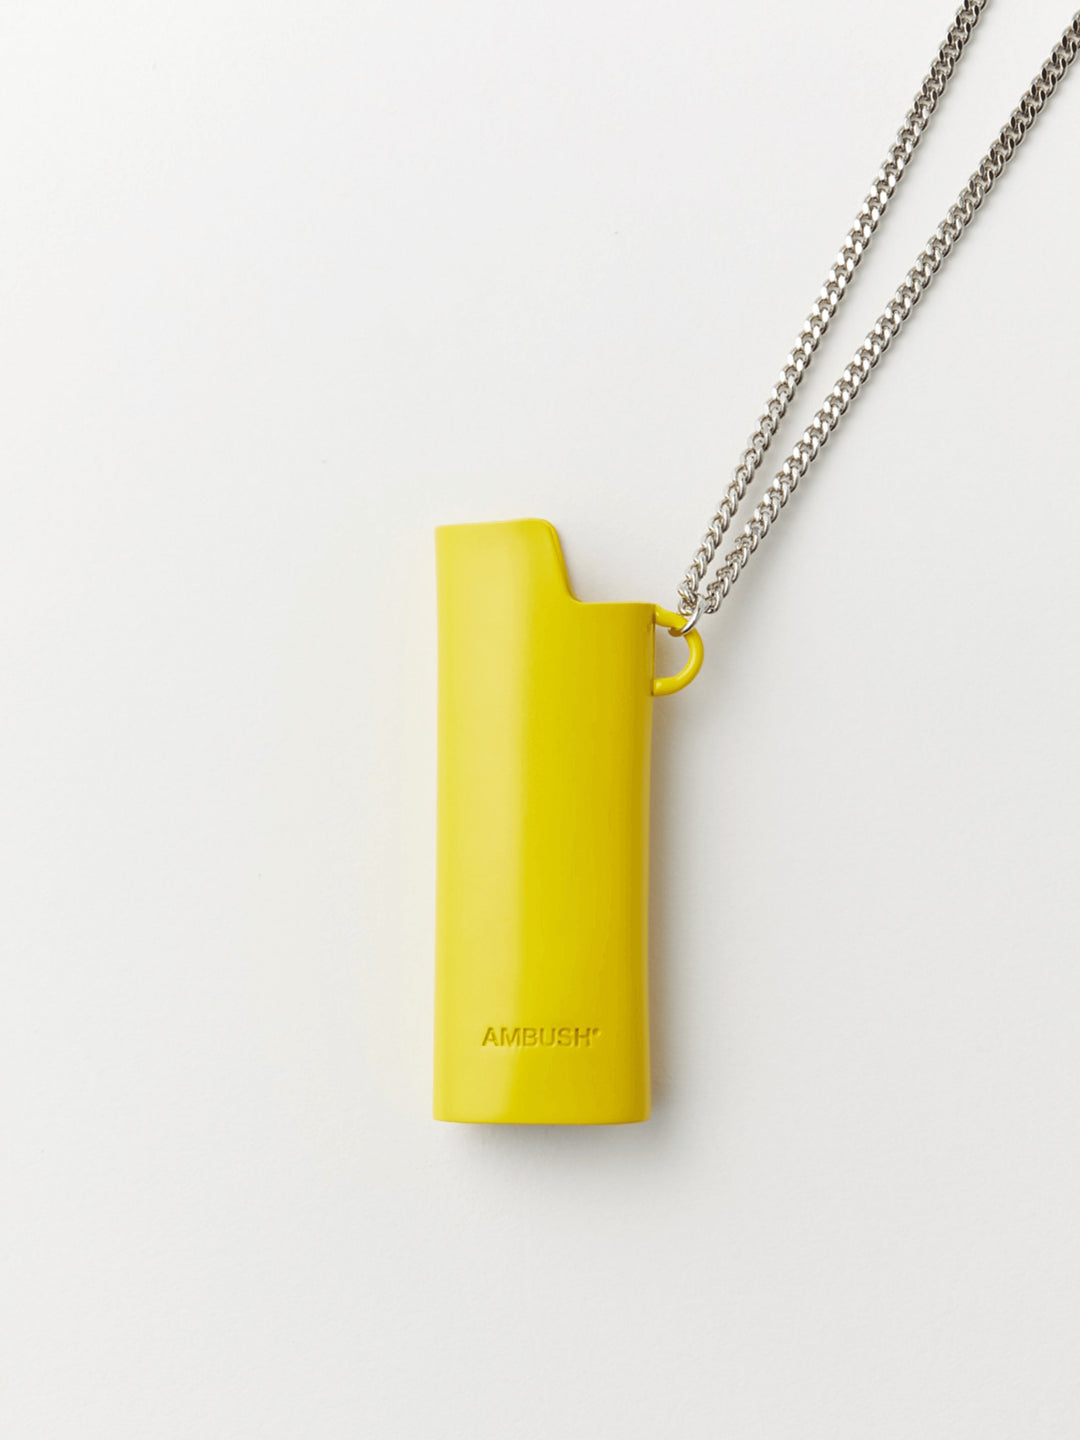 Ambush Lighter Case Necklace (Yellow) Small Ambush